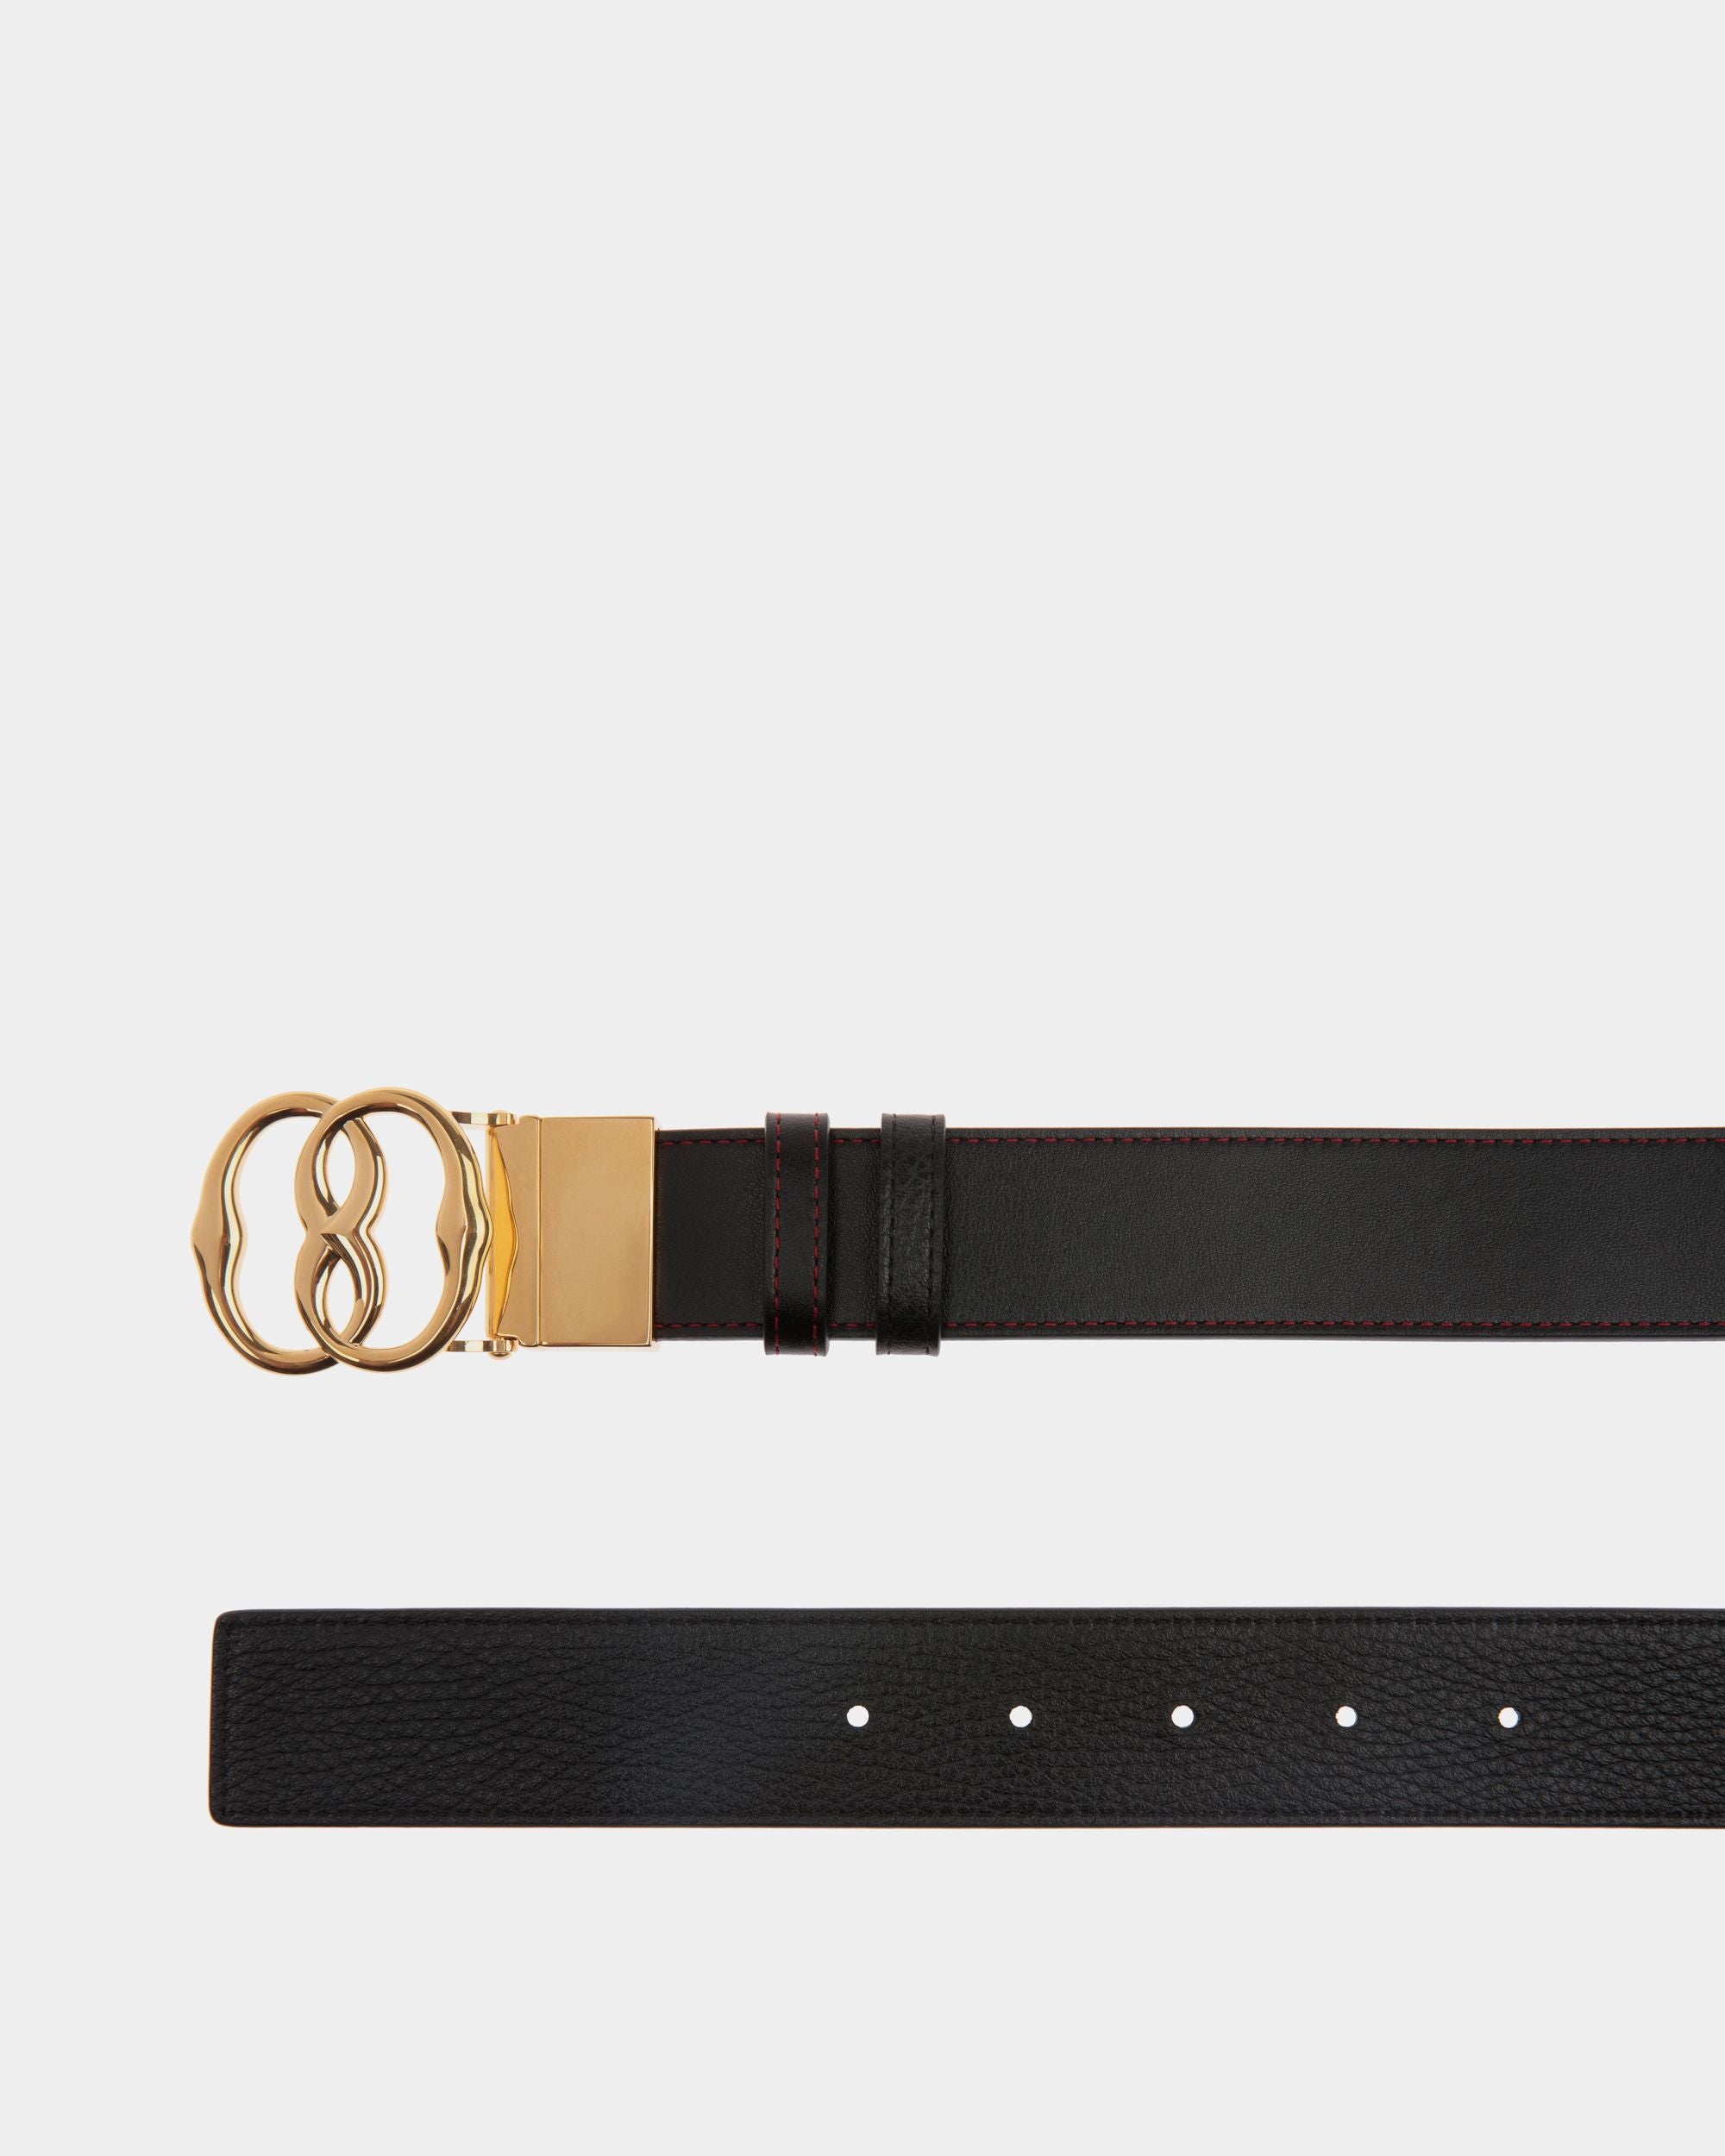 Emblem 35mm | Men's Reversible And Adjustable Belt in Black Leather | Bally | Still Life Detail